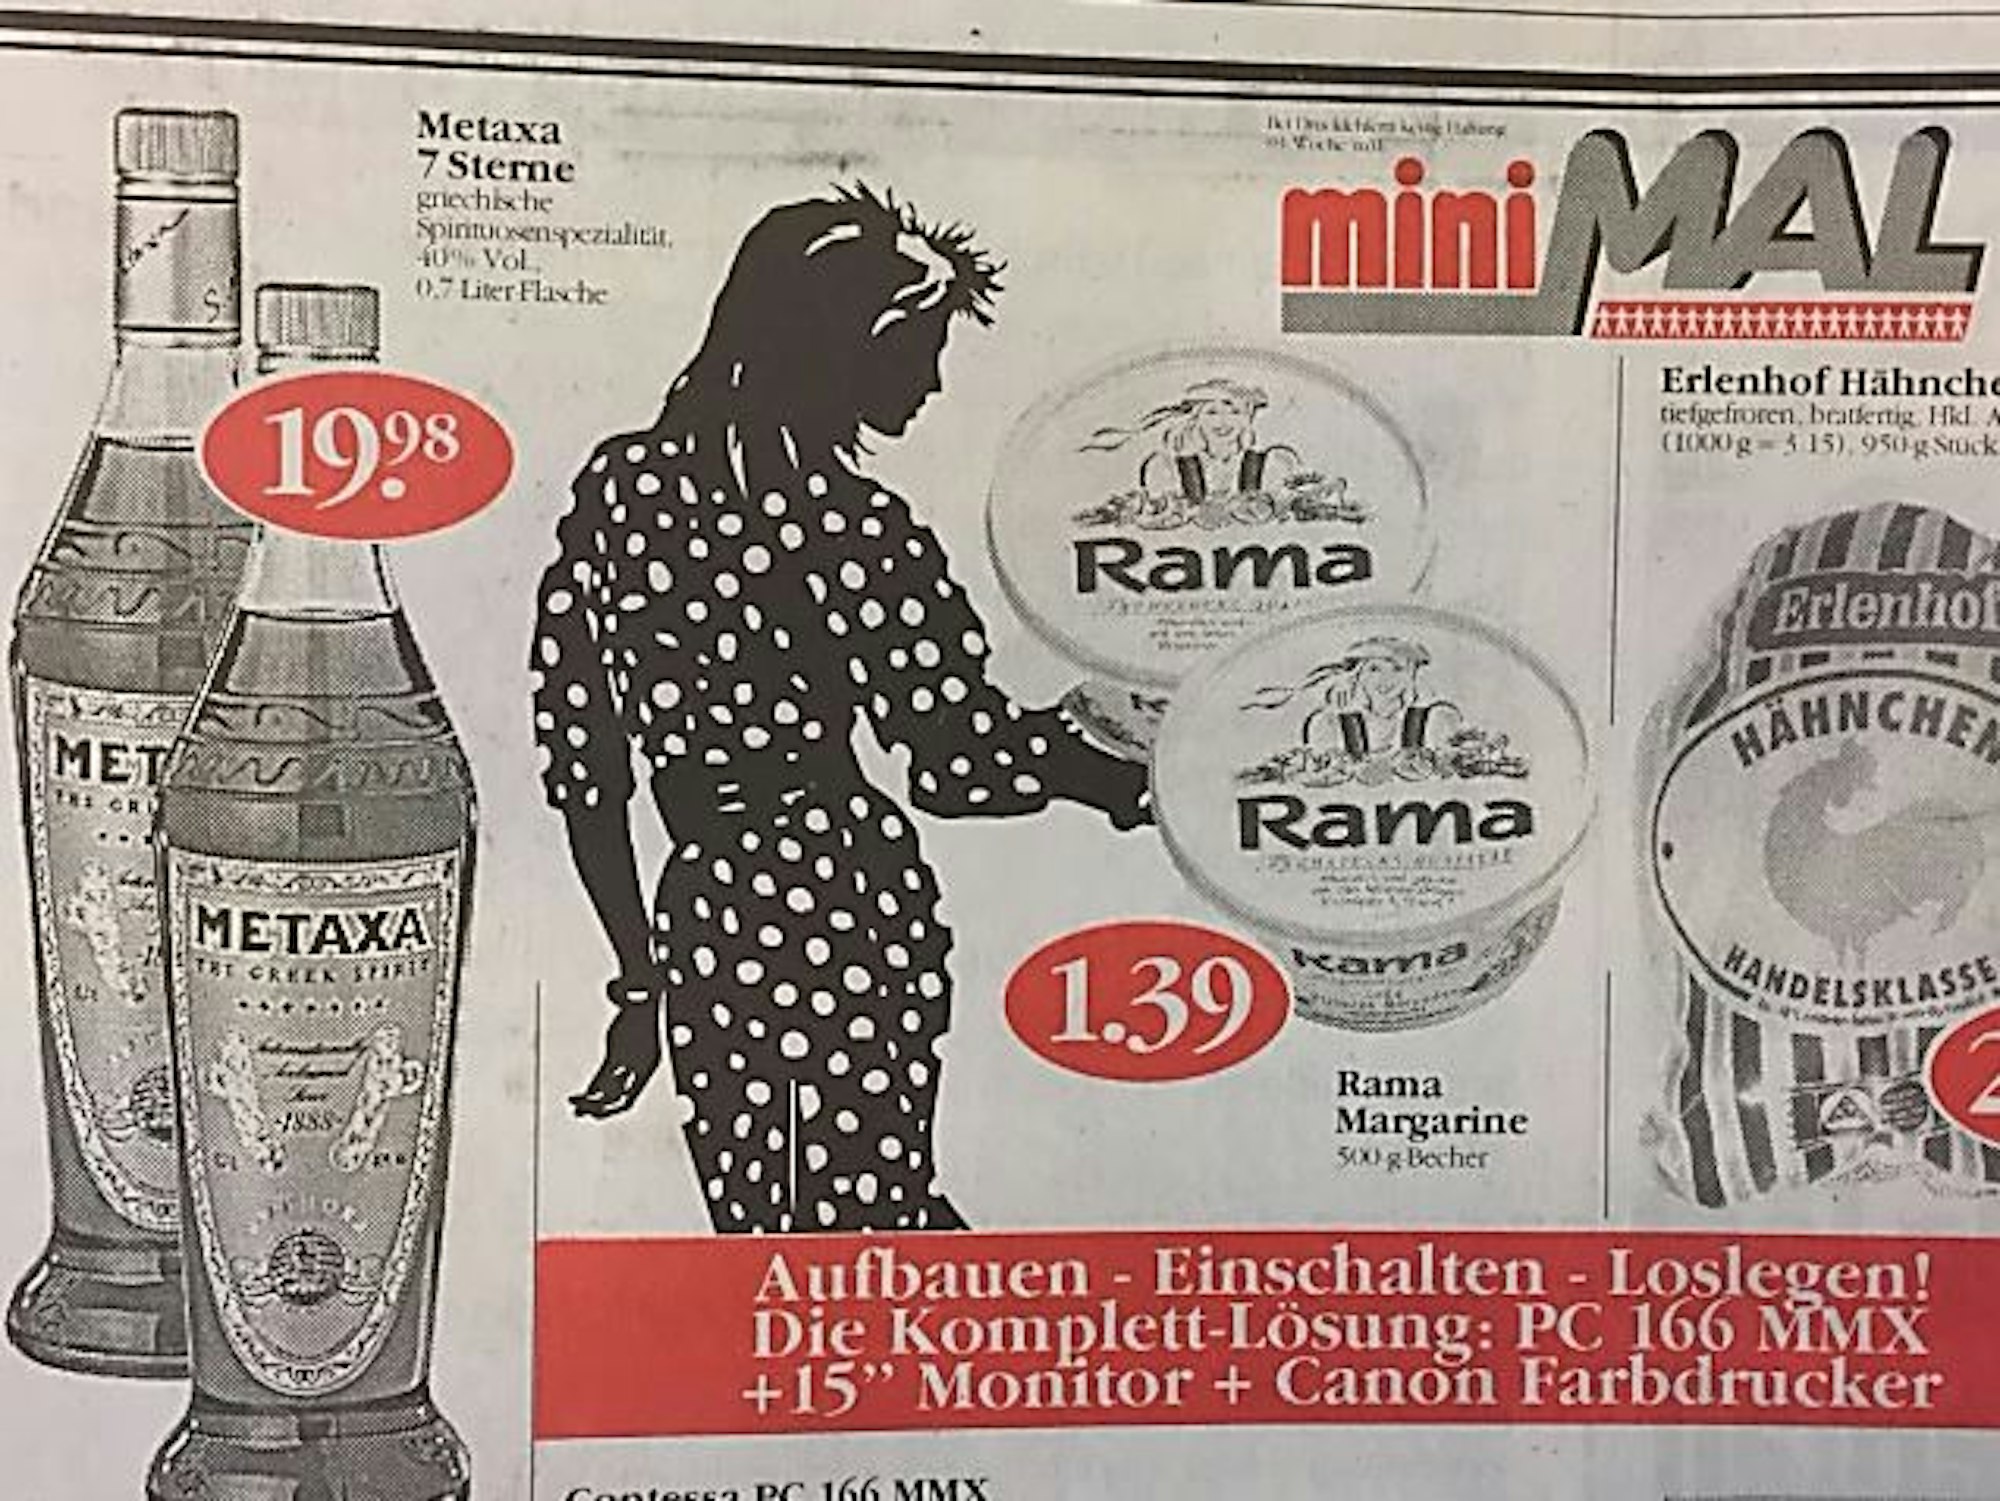 Das Foto zeigt Supermarktwerbung von 1998 – mit Metaxa und Rama.